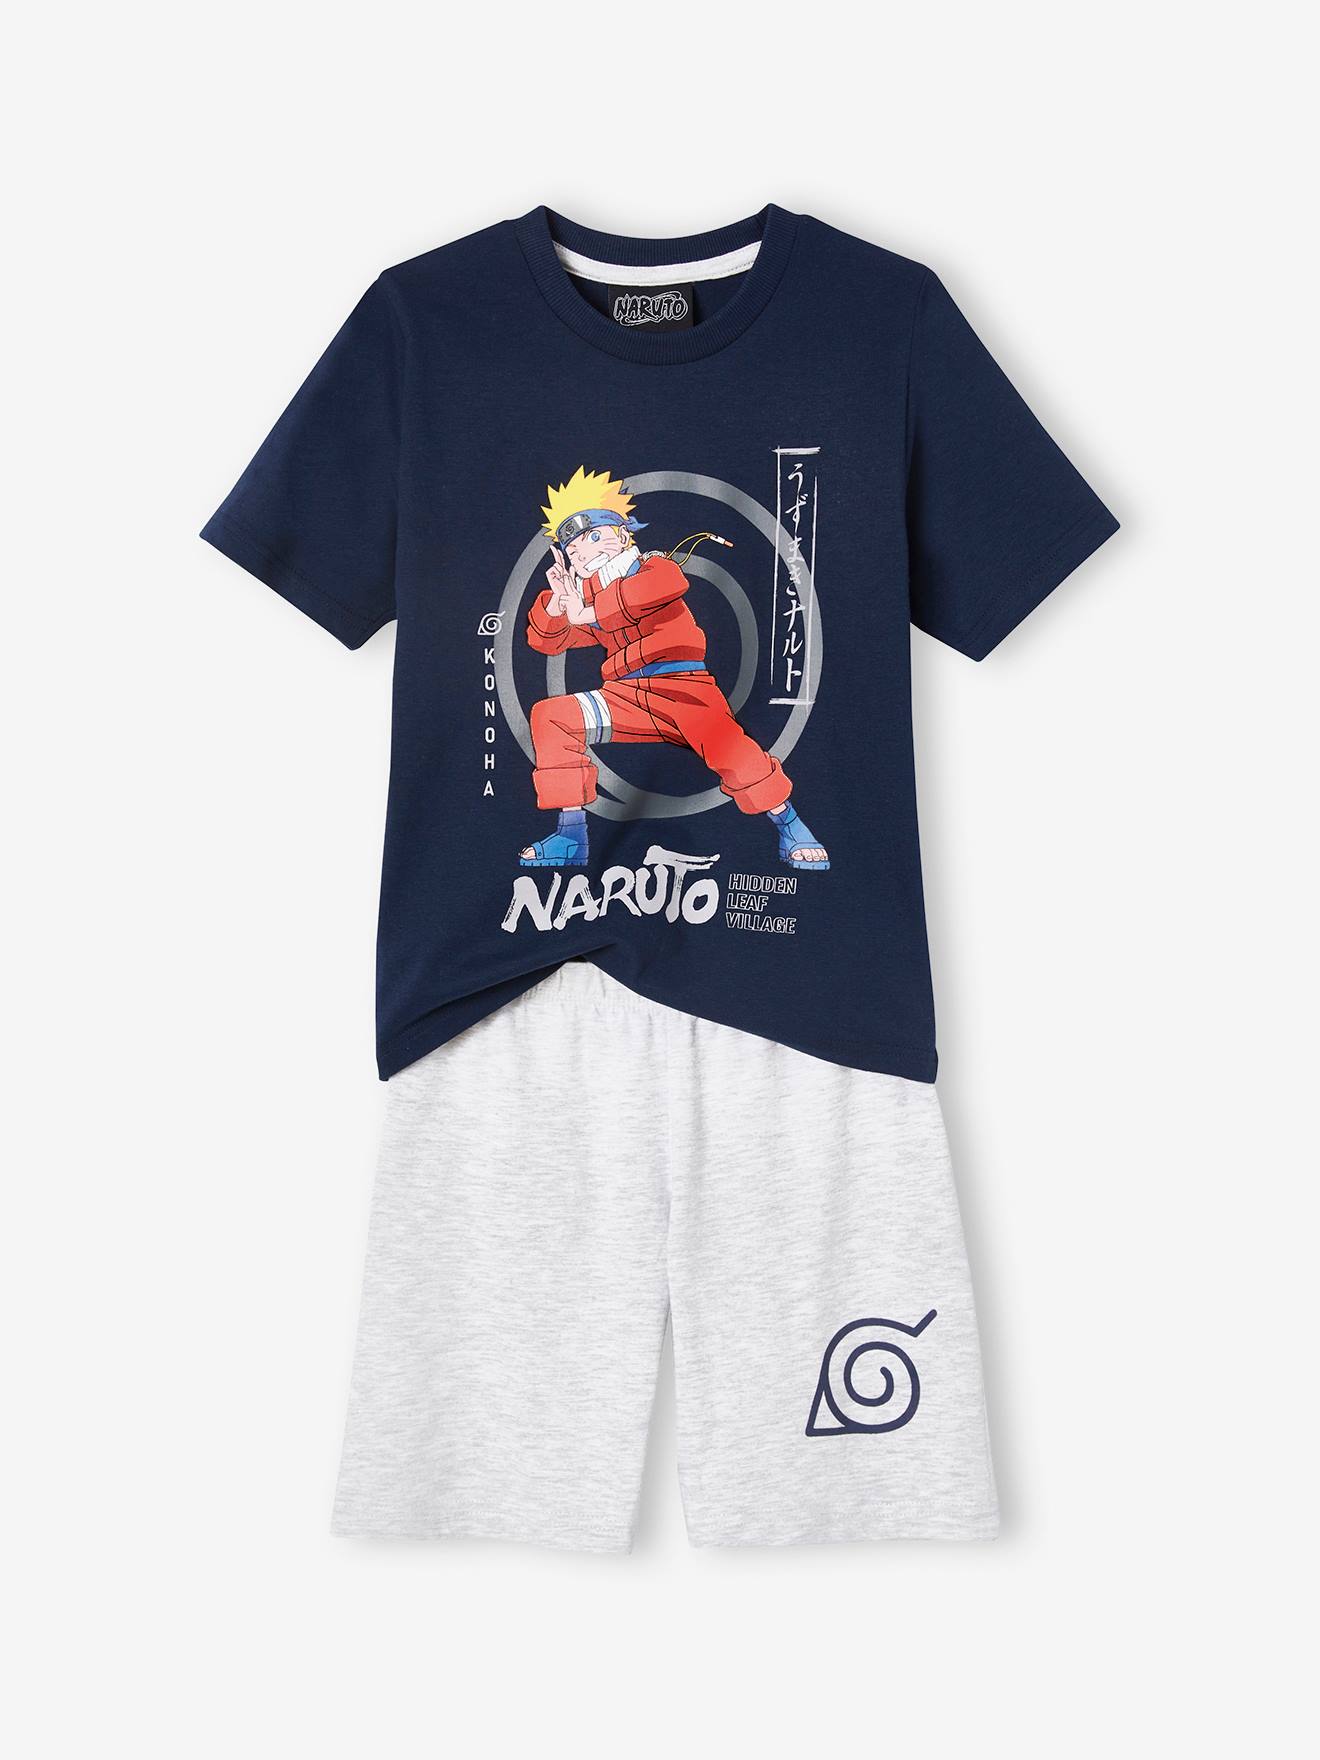 Naruto(r) Pyjamas for Boys black